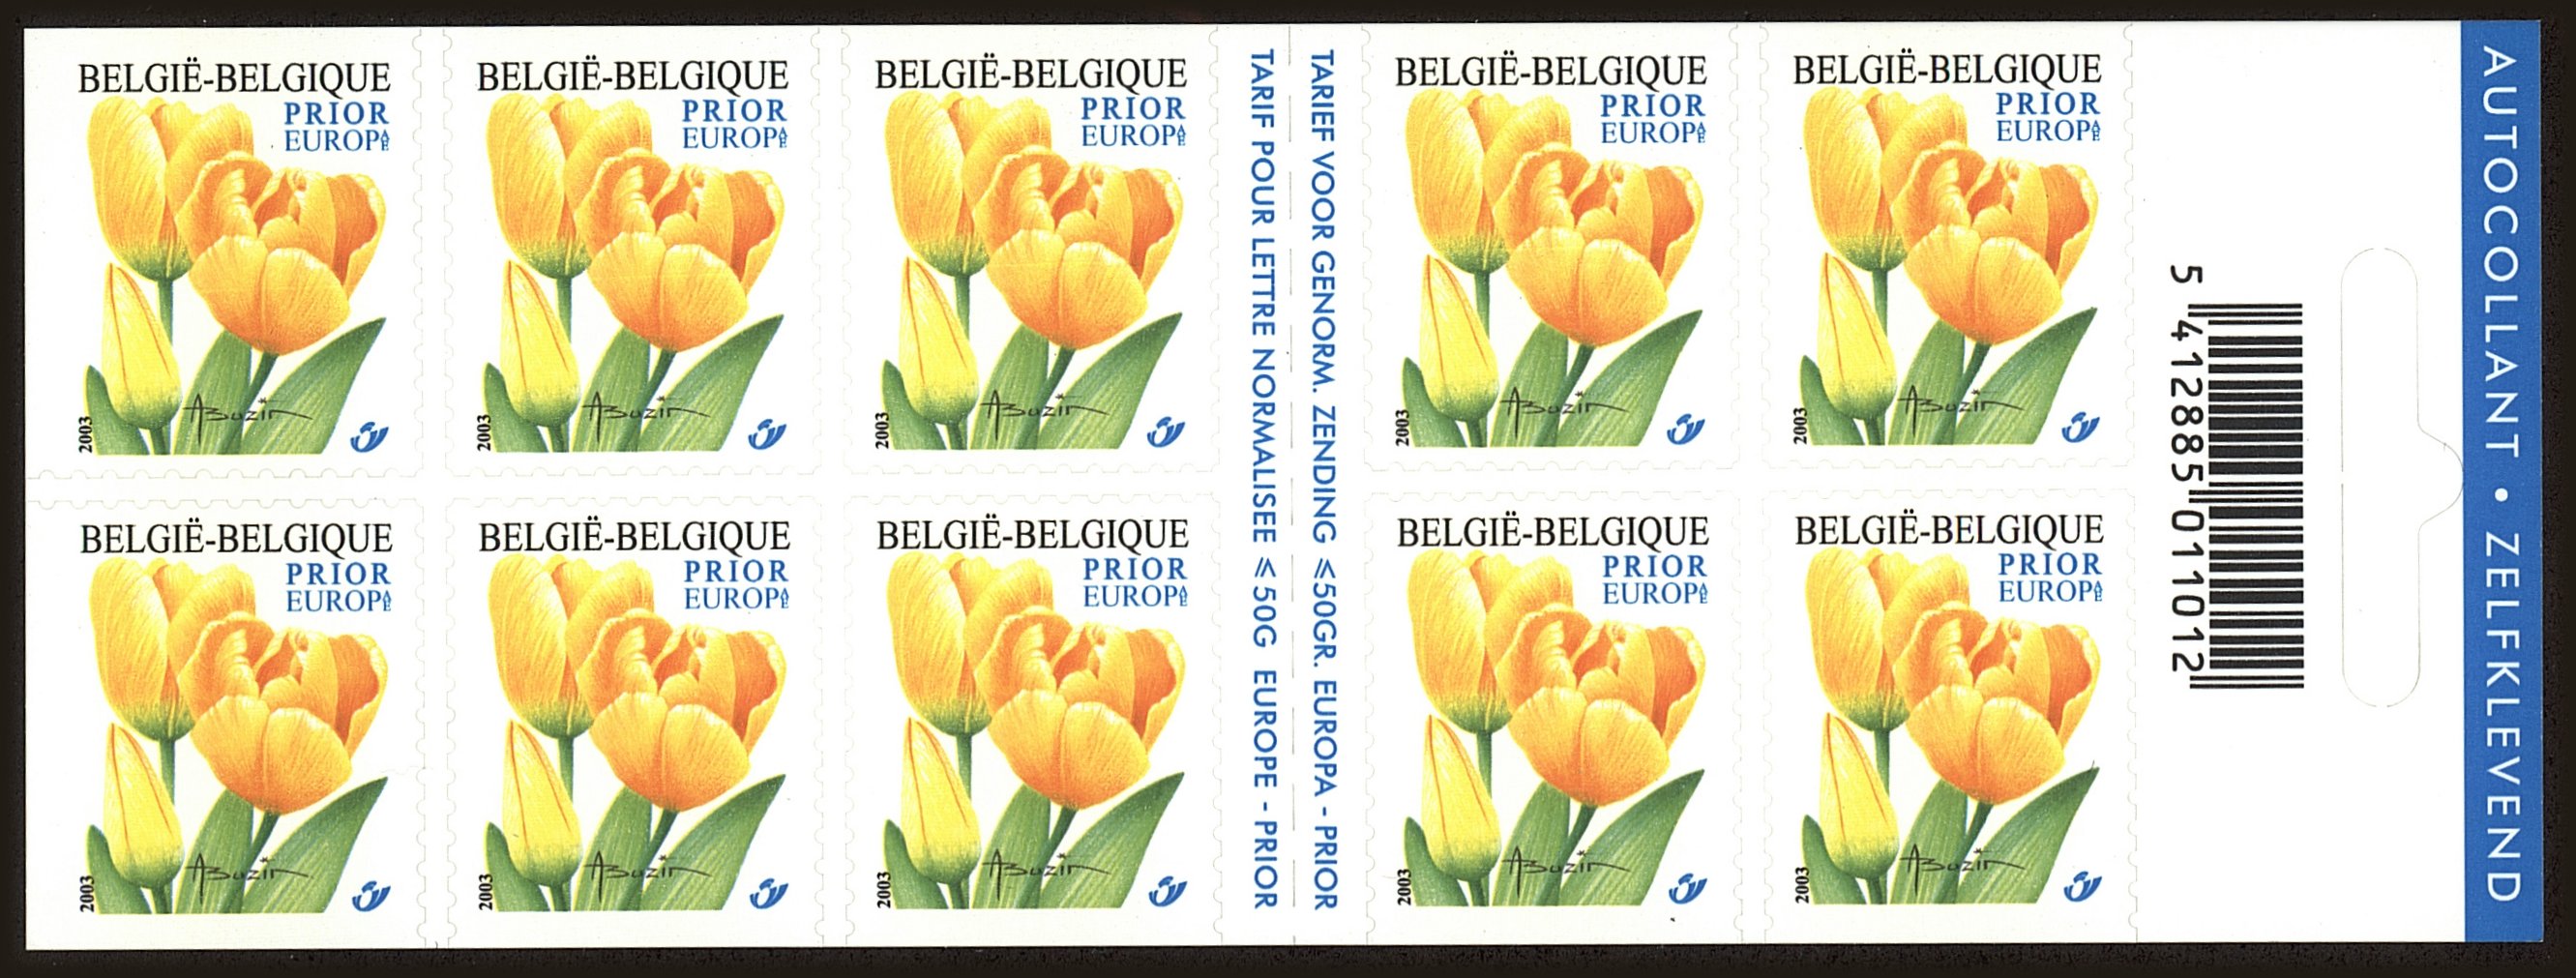 Front view of Belgium 1991 collectors stamp